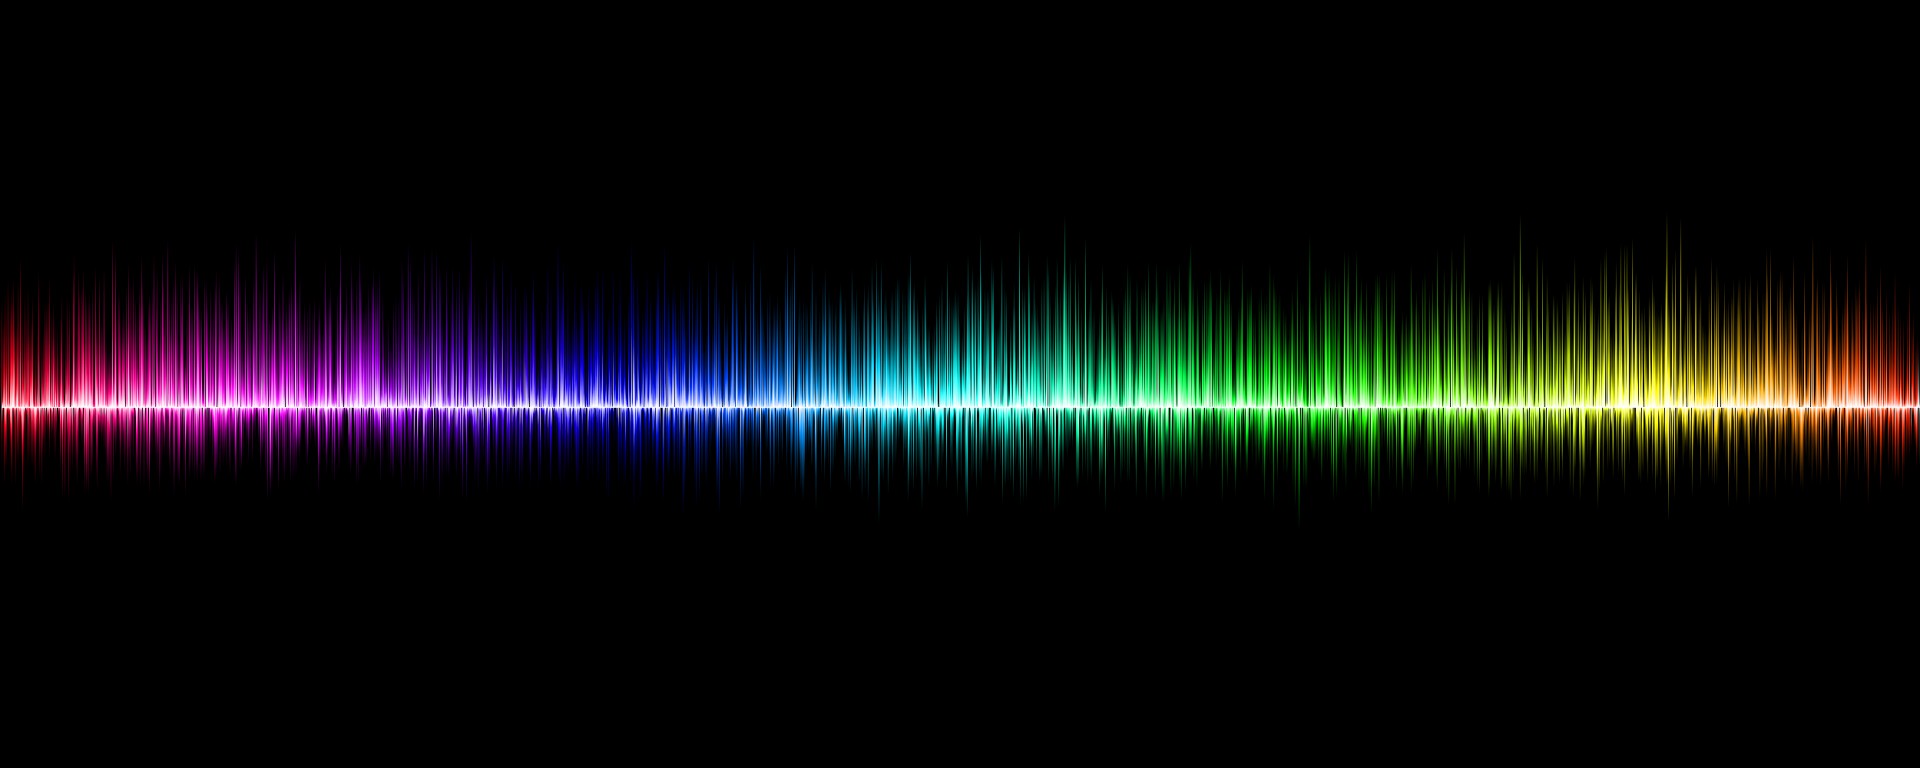 Schallwellen und Grafik des sichtbaren Spektrums